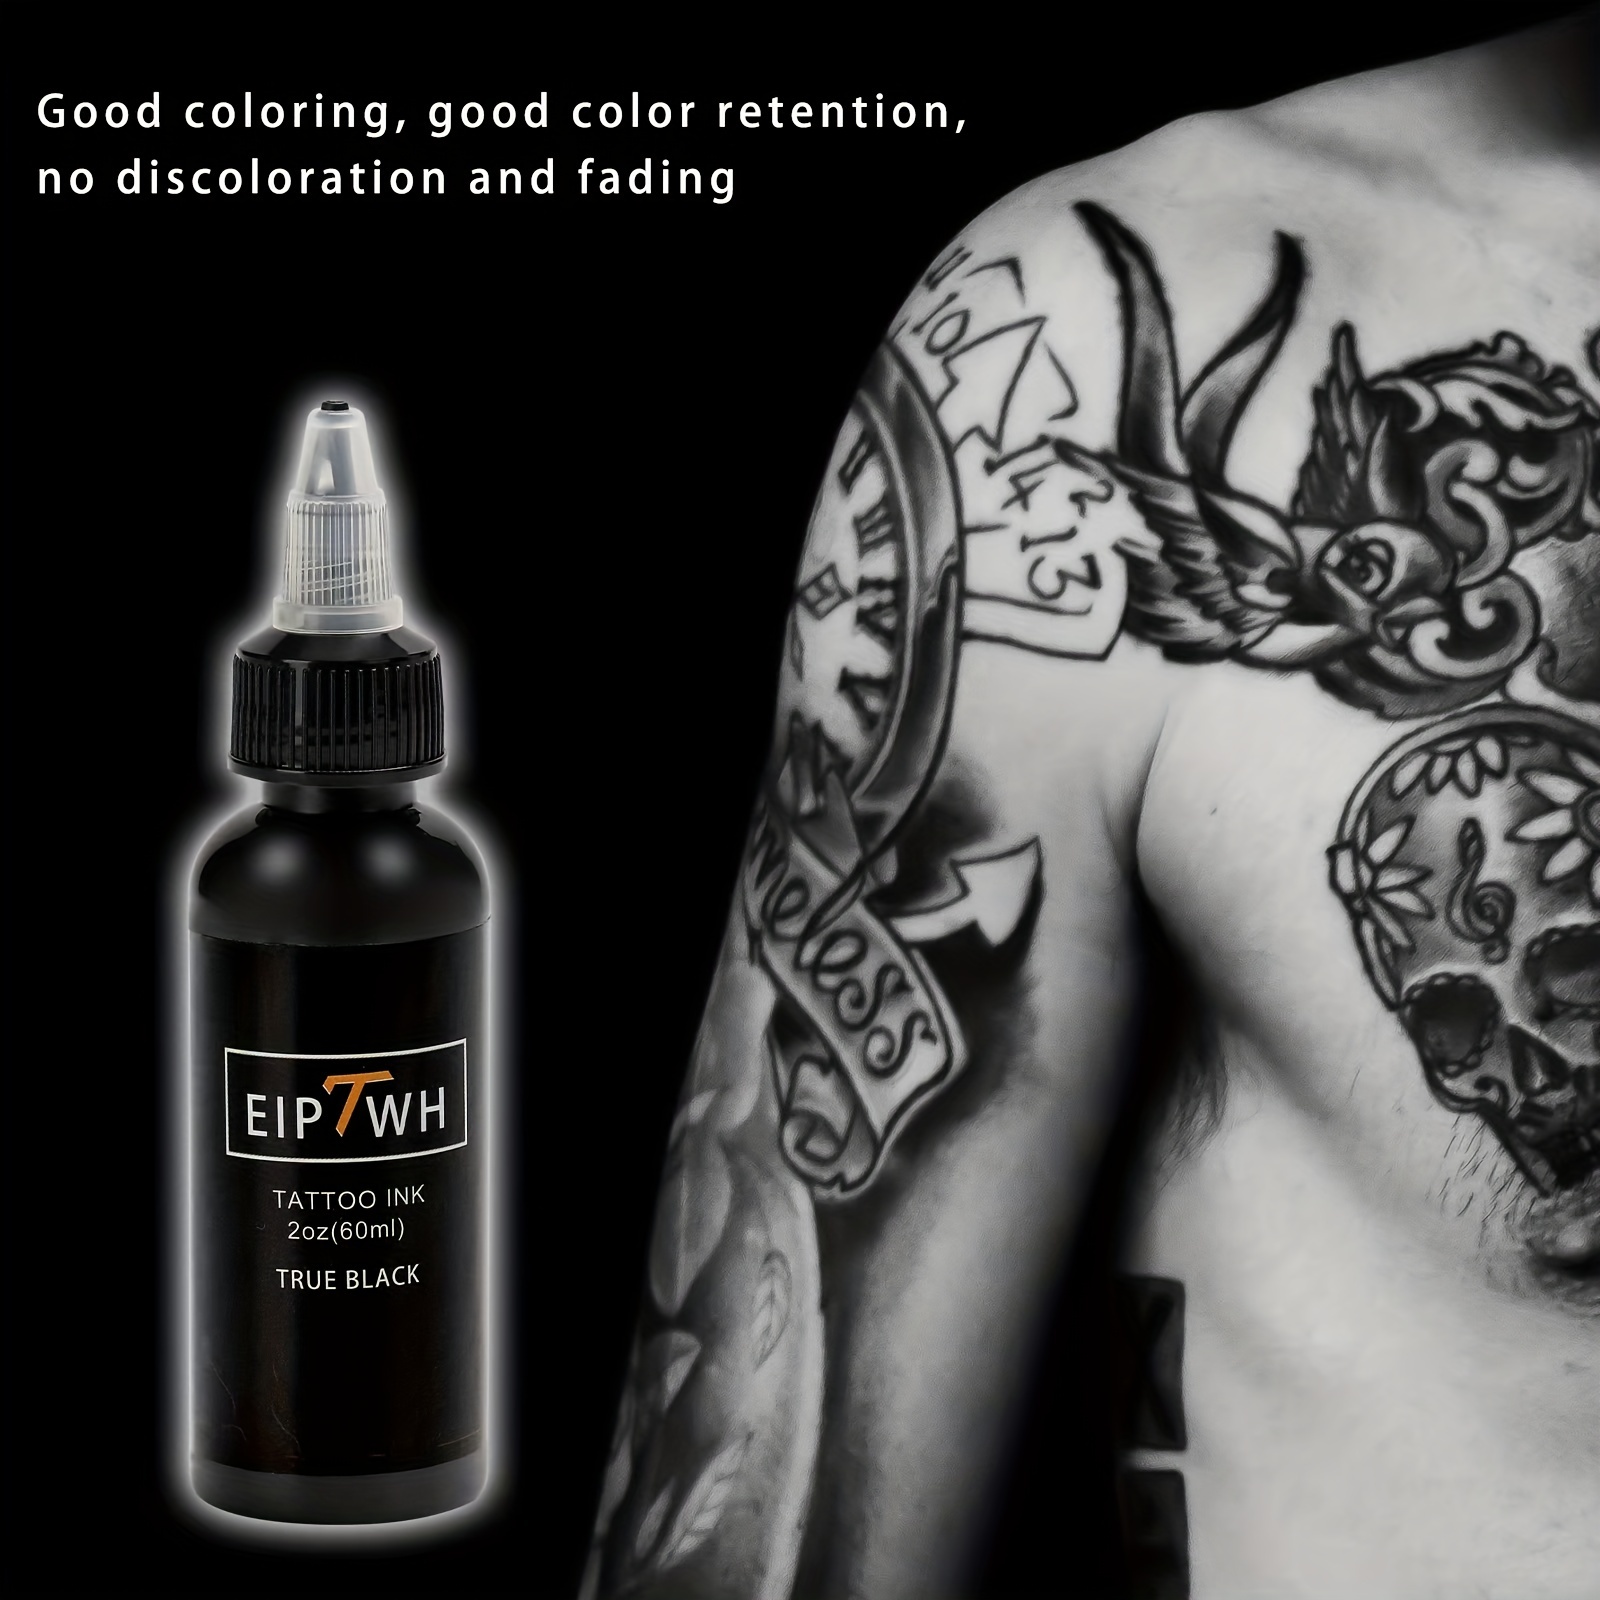 NEW Dynamic Professional Black Tattoo Ink Pigment DIY Tattoo Pigment  Practice Supplie Tattoo Gel Body Art Tattoo Pigment 8OZ BLK - AliExpress